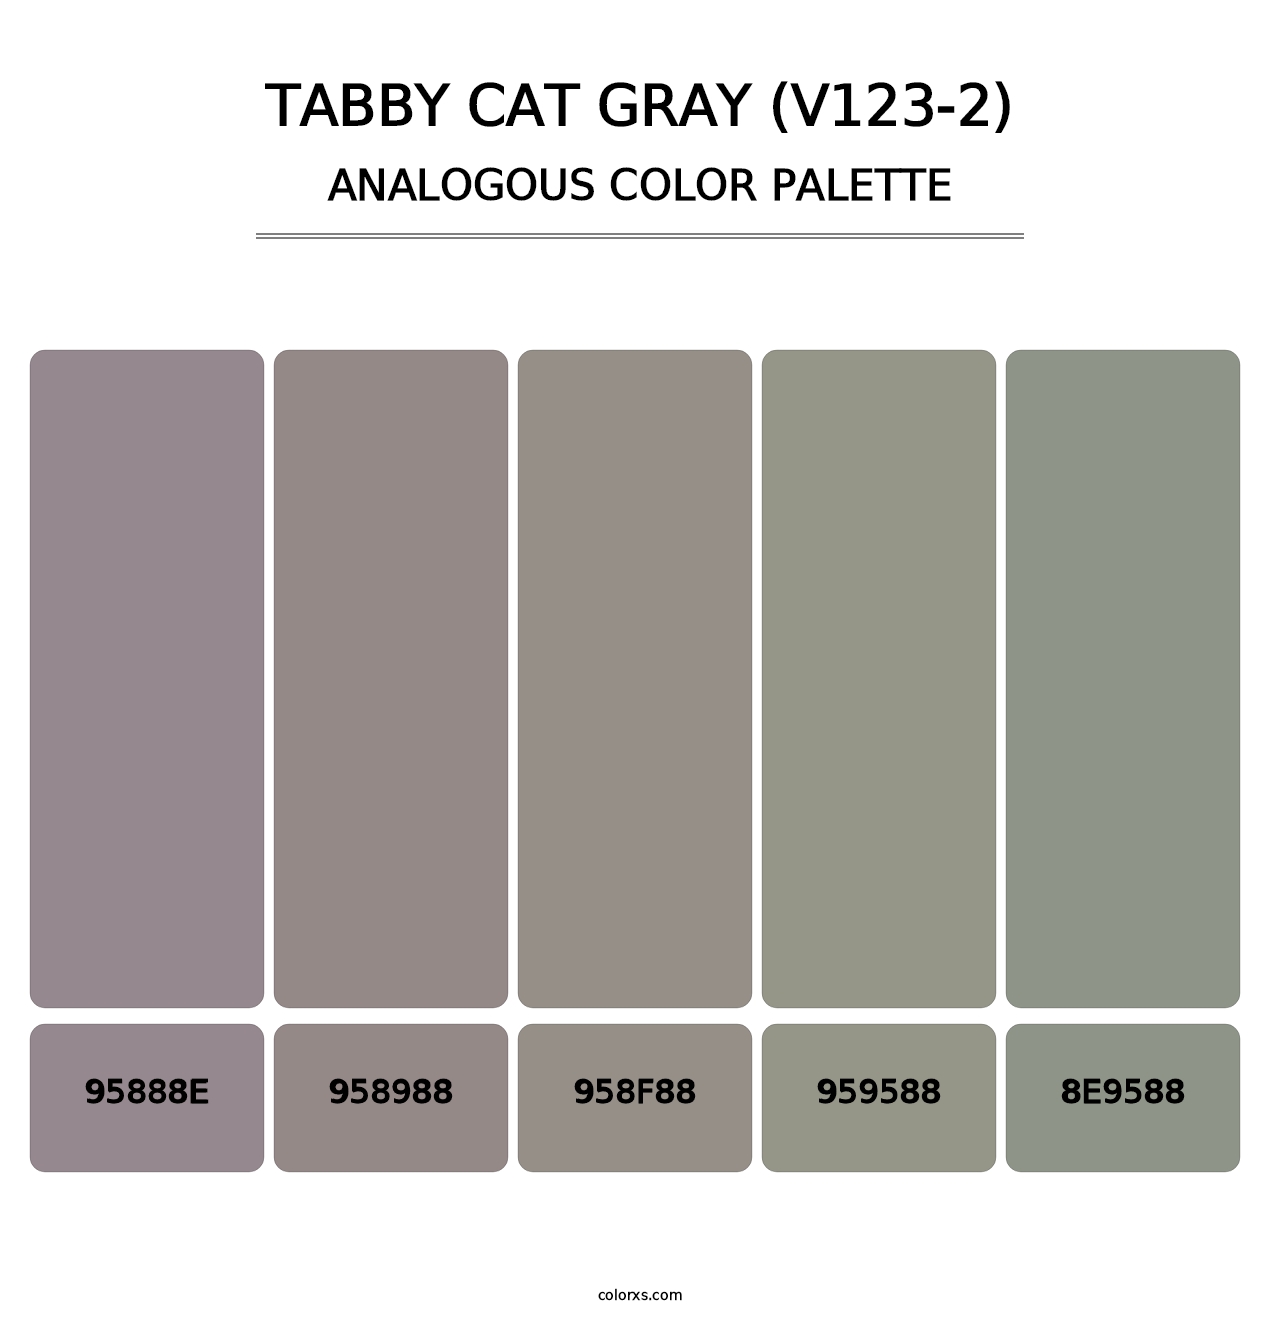 Tabby Cat Gray (V123-2) - Analogous Color Palette